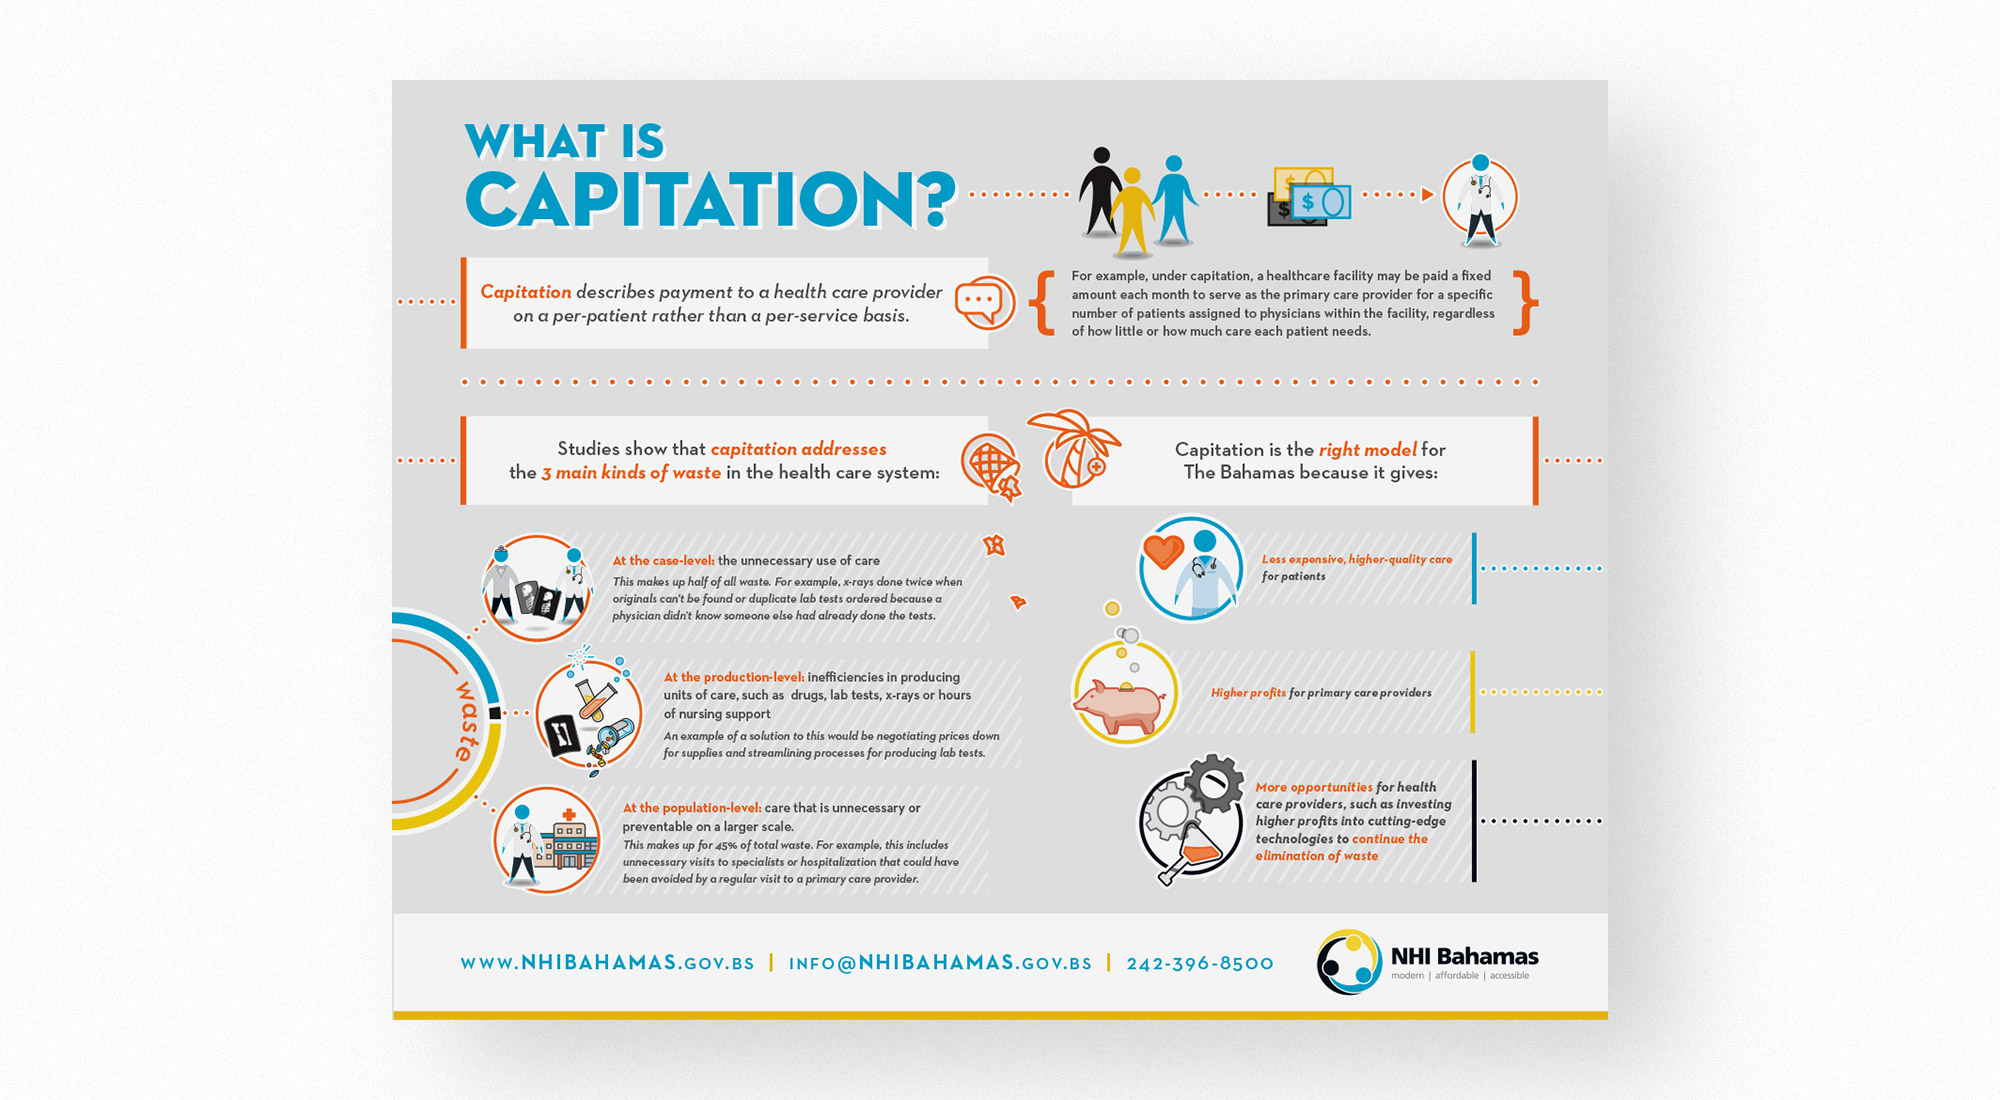 NHI Bahamas Captiation Infographic